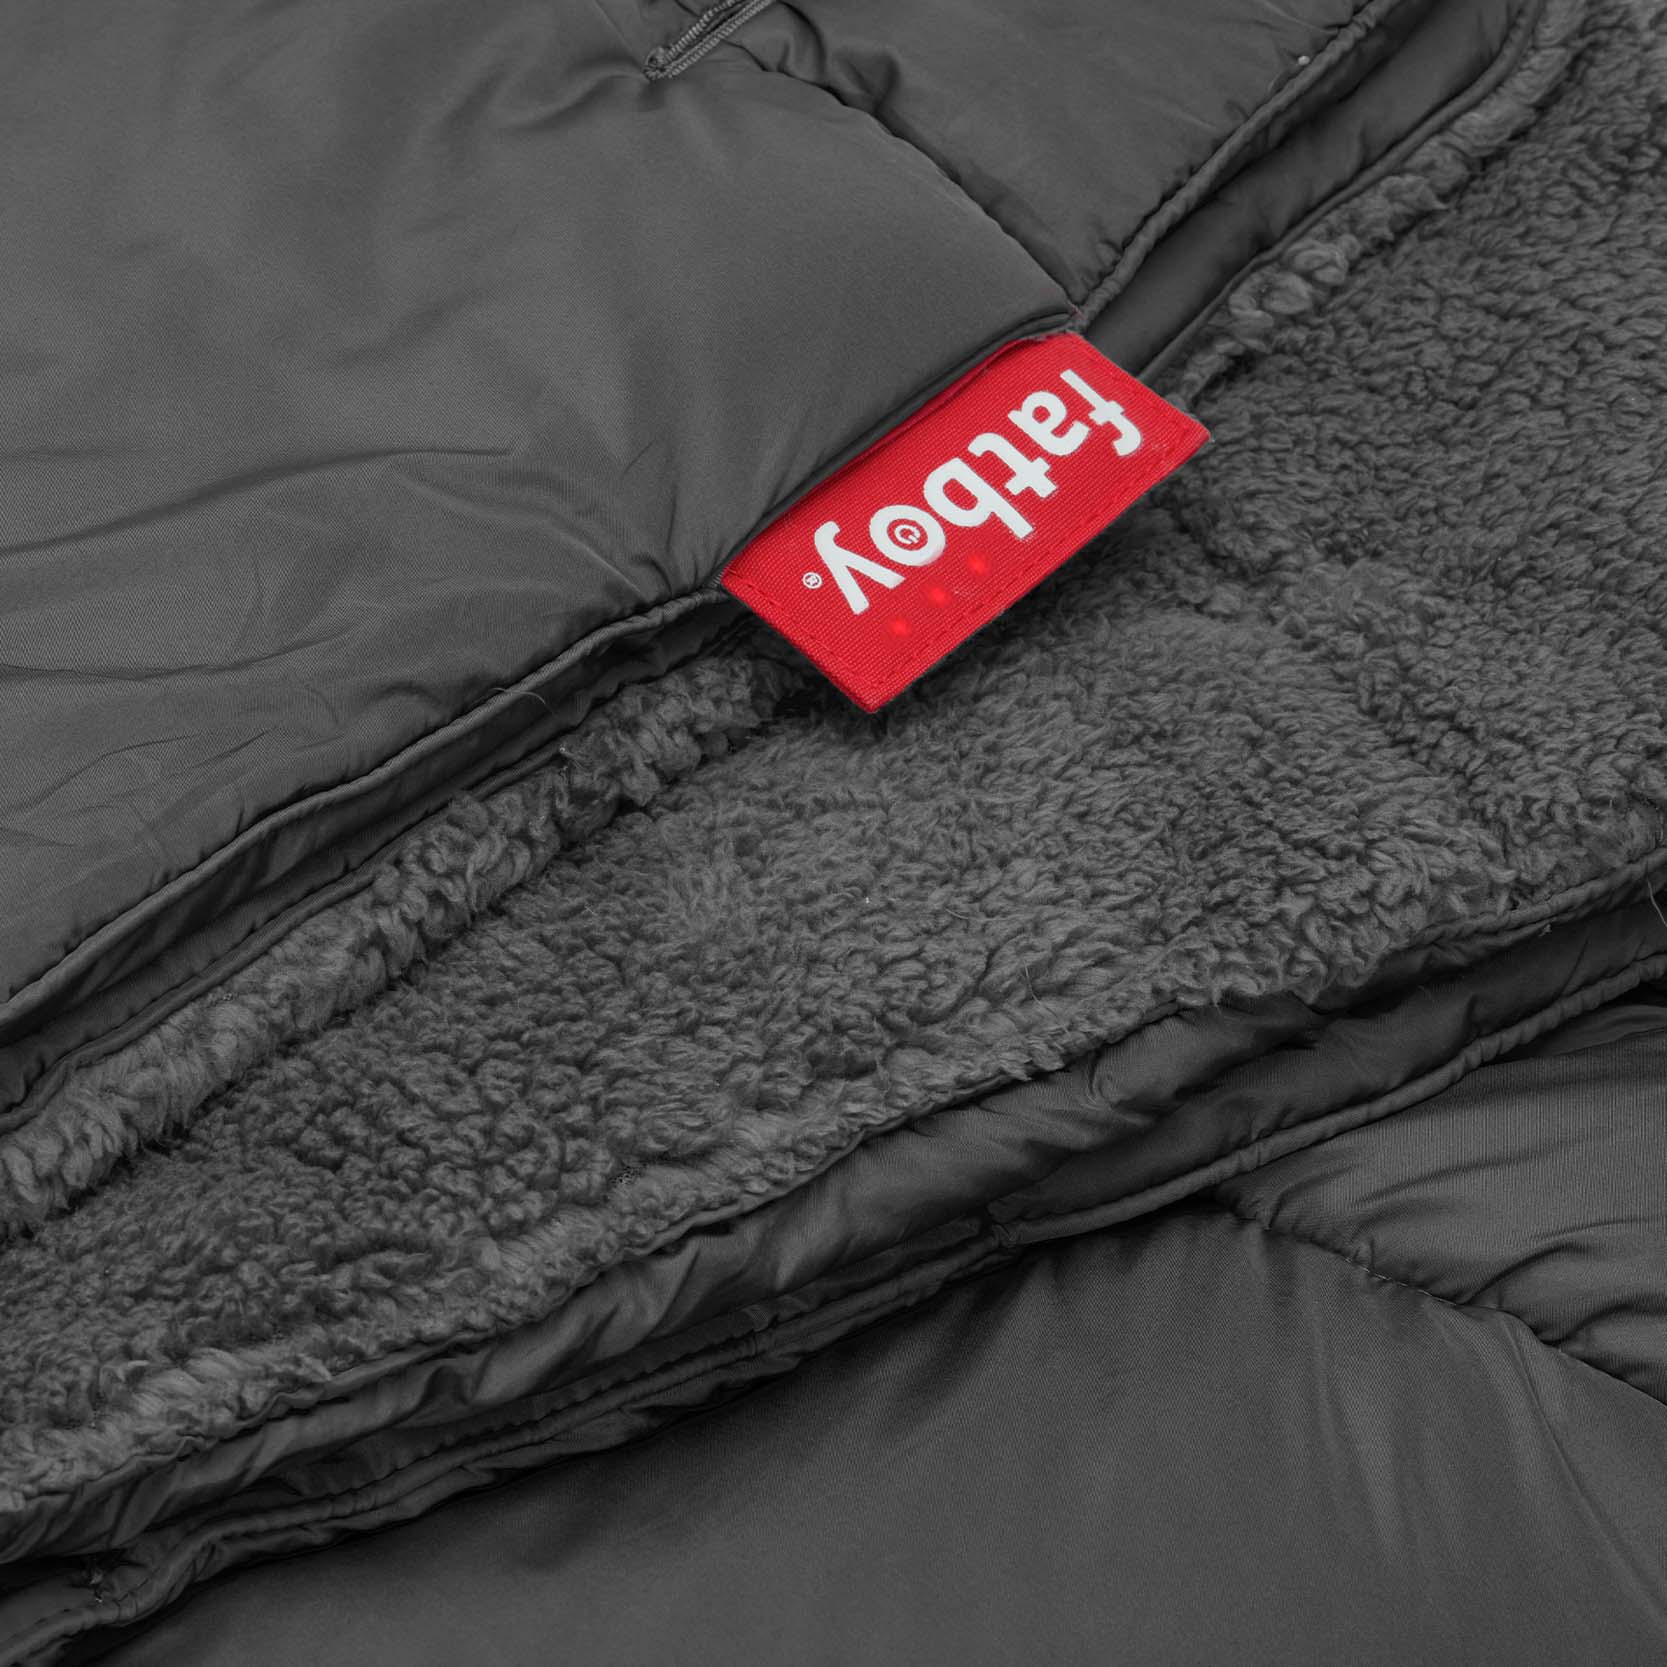 Hotspot Blanket: die Wärmedecke, die Du auch anziehen kannst